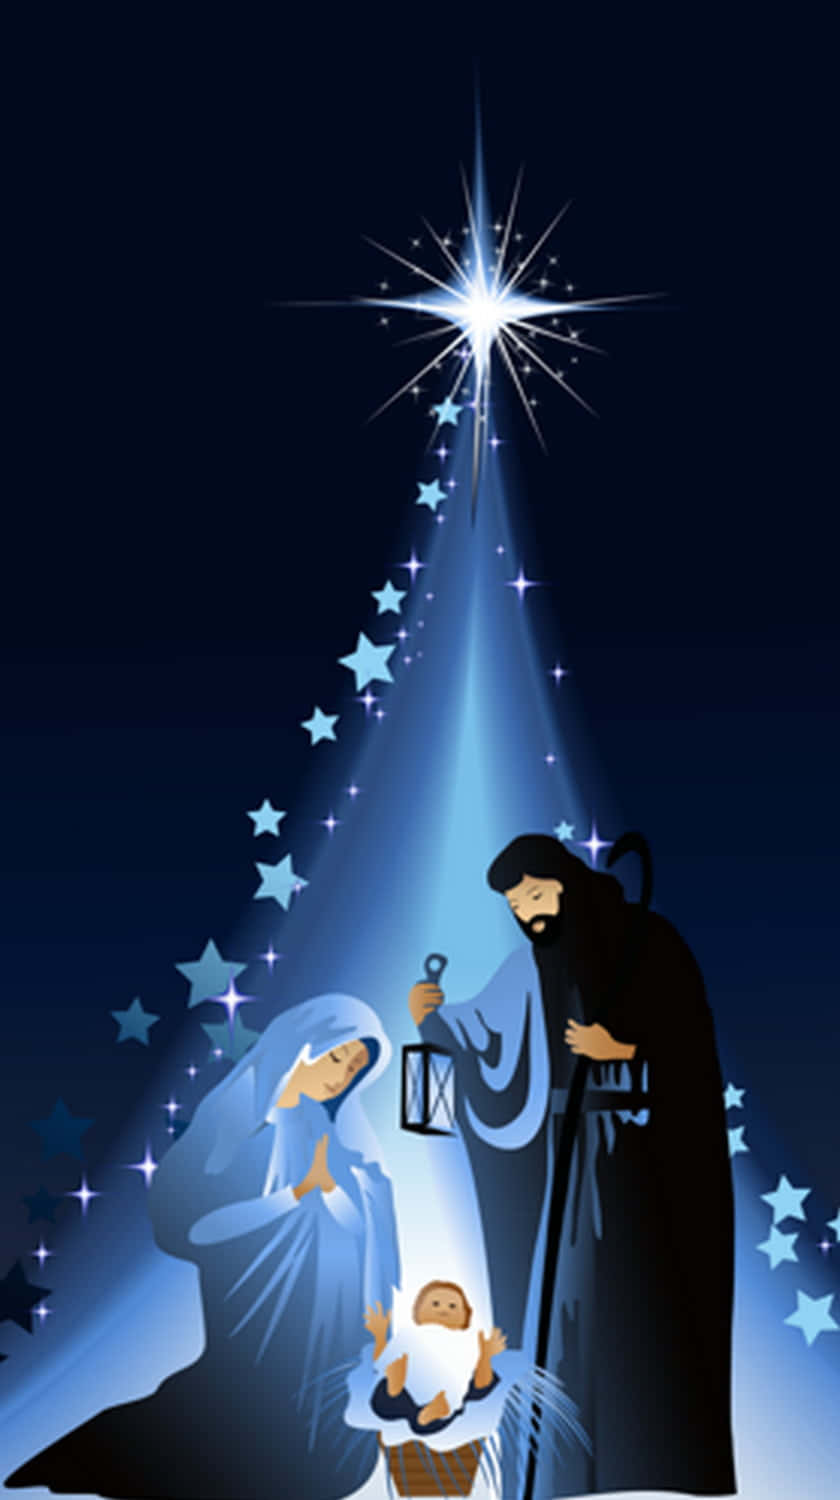 Celebrandoo Nascimento De Jesus Cristo Na Alegre Festividade Do Natal. Papel de Parede